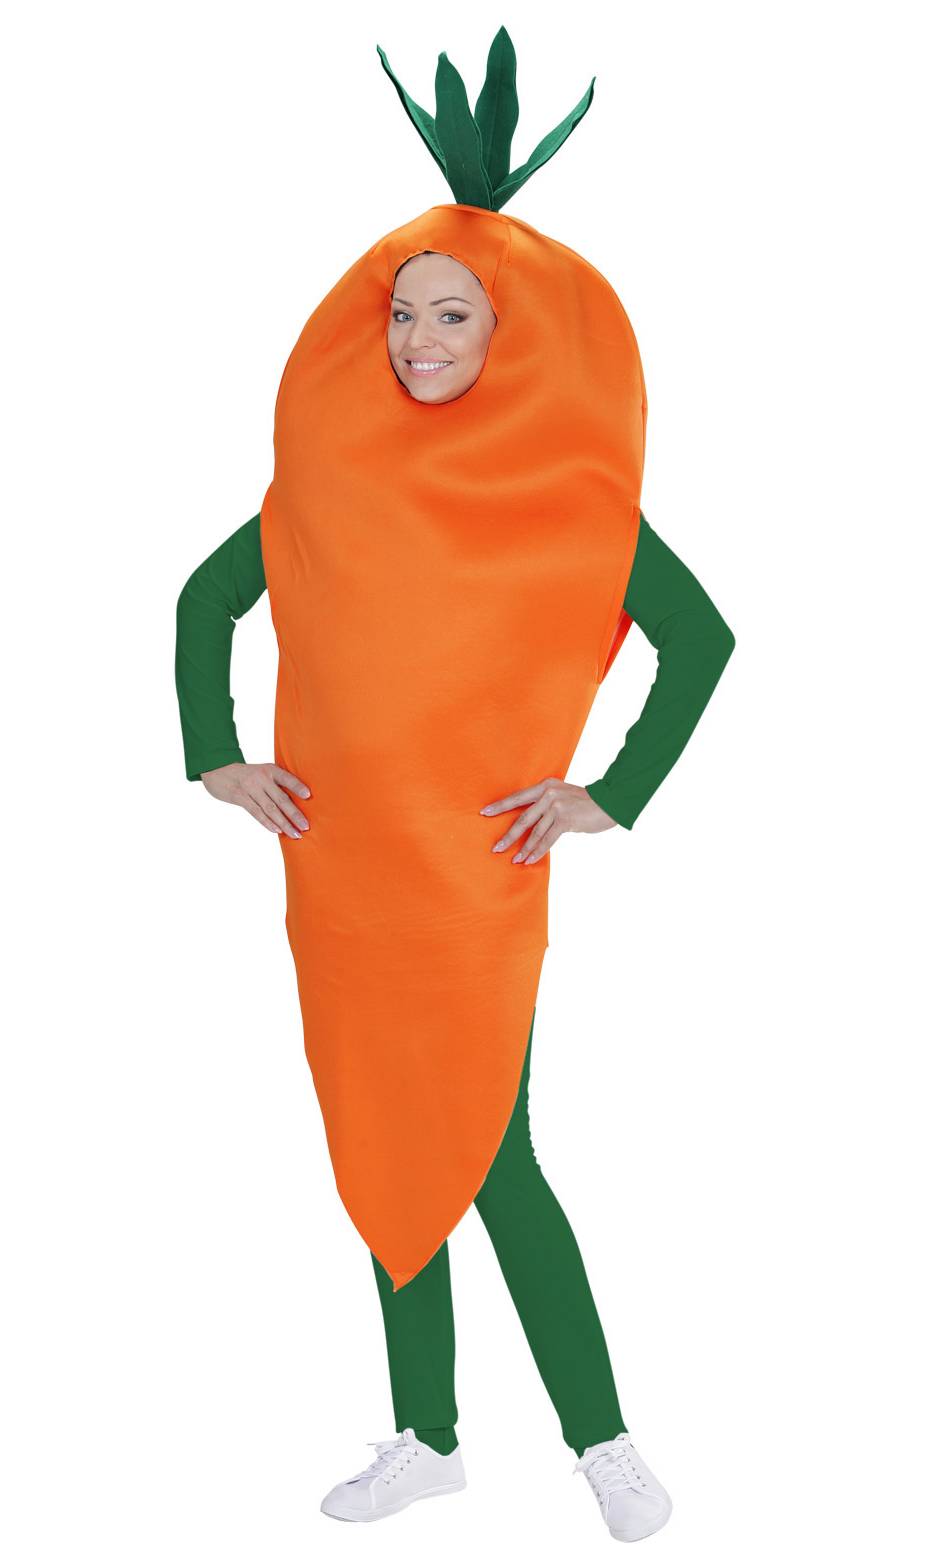 Je suis une carotte!